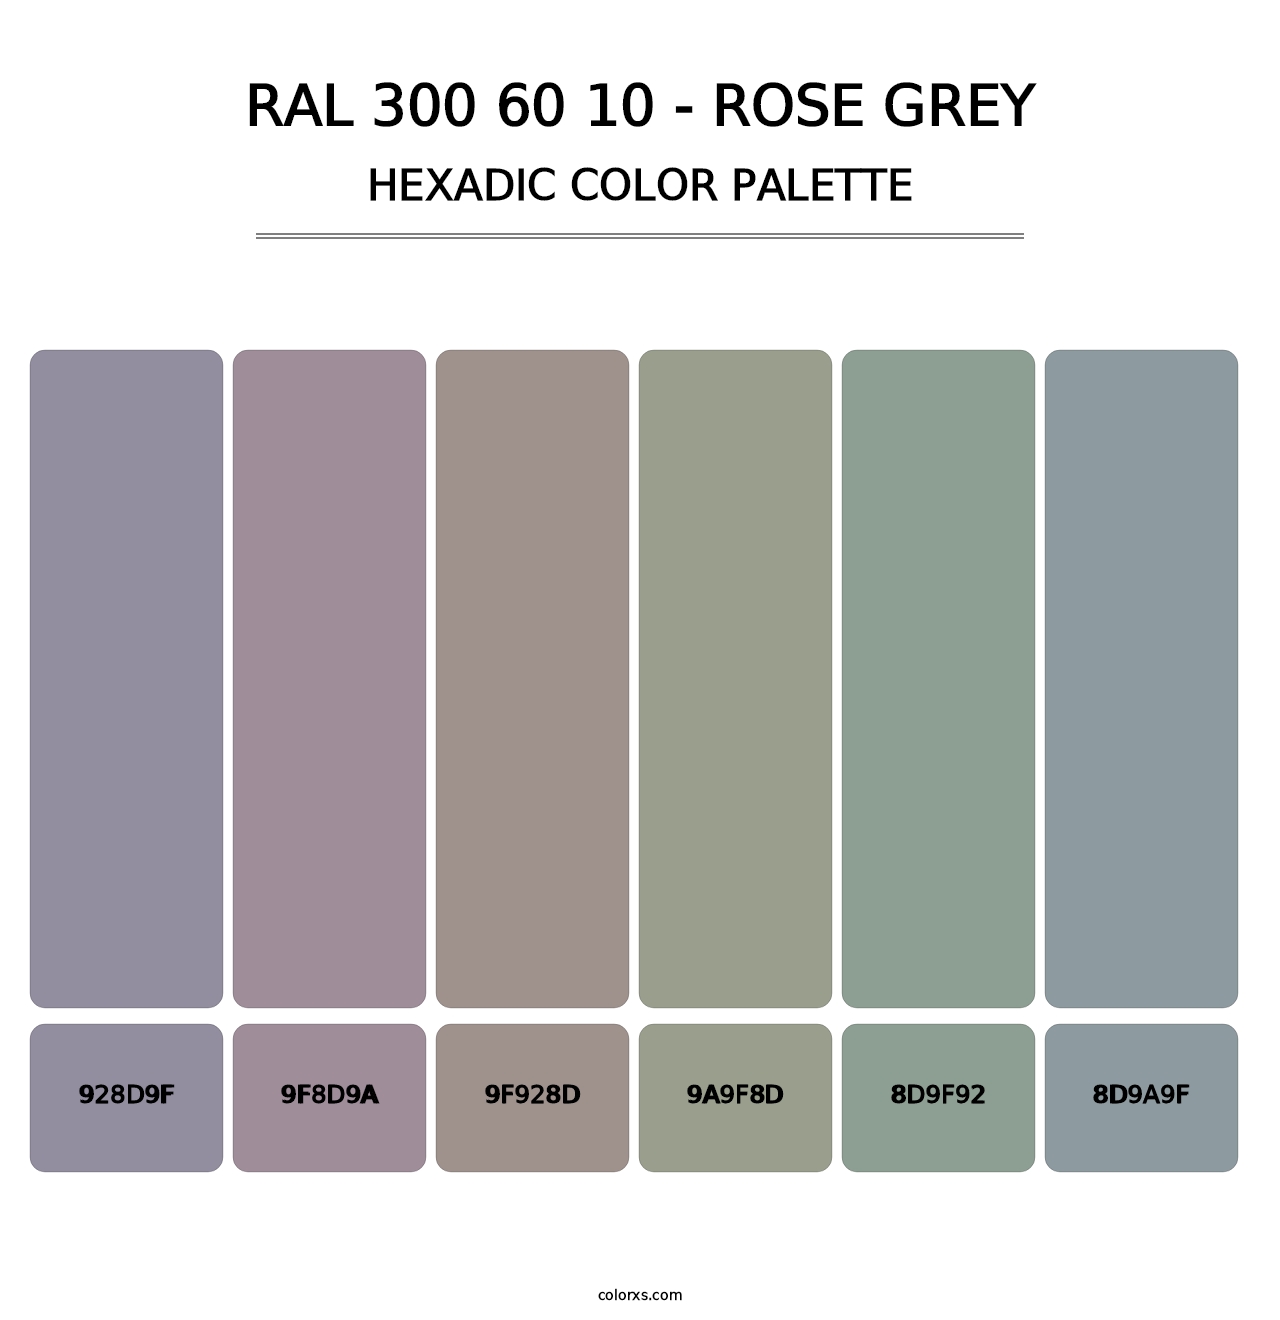 RAL 300 60 10 - Rose Grey - Hexadic Color Palette